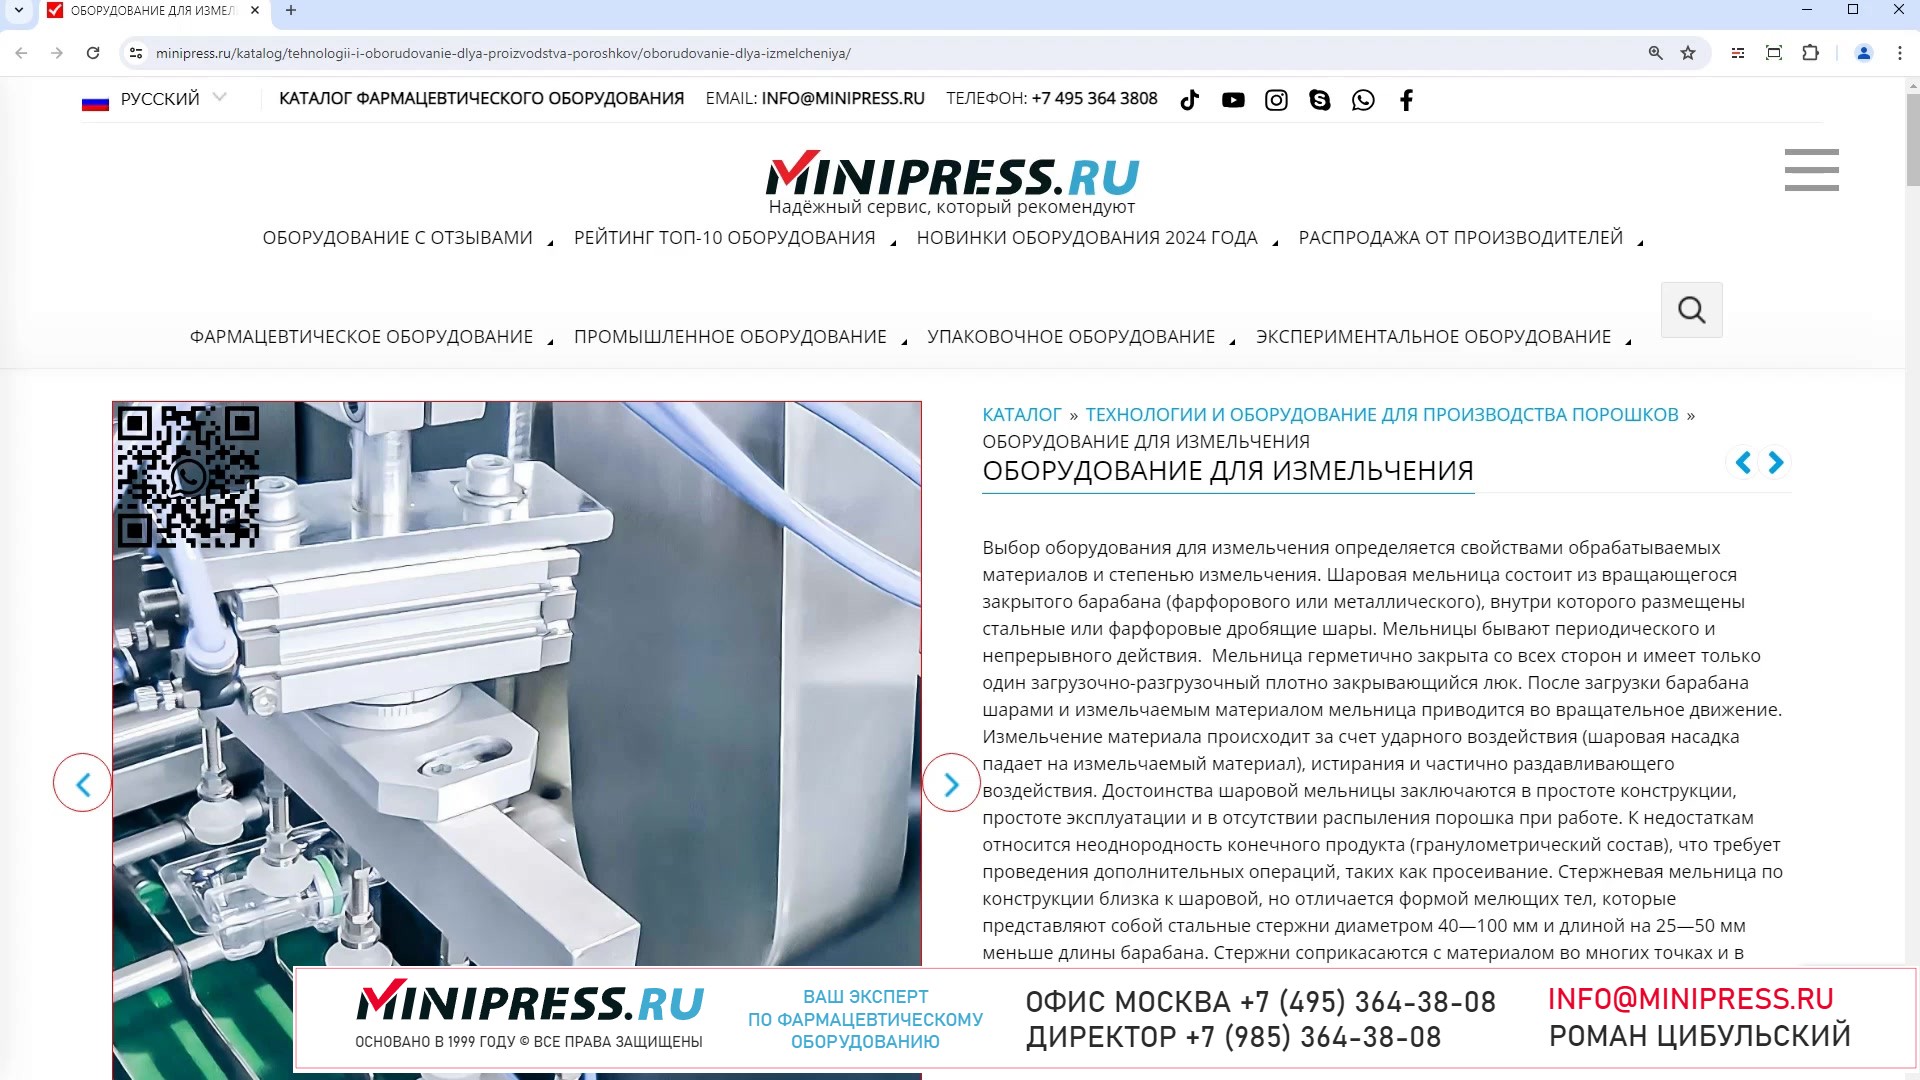 Minipress.ru Оборудование для измельчения